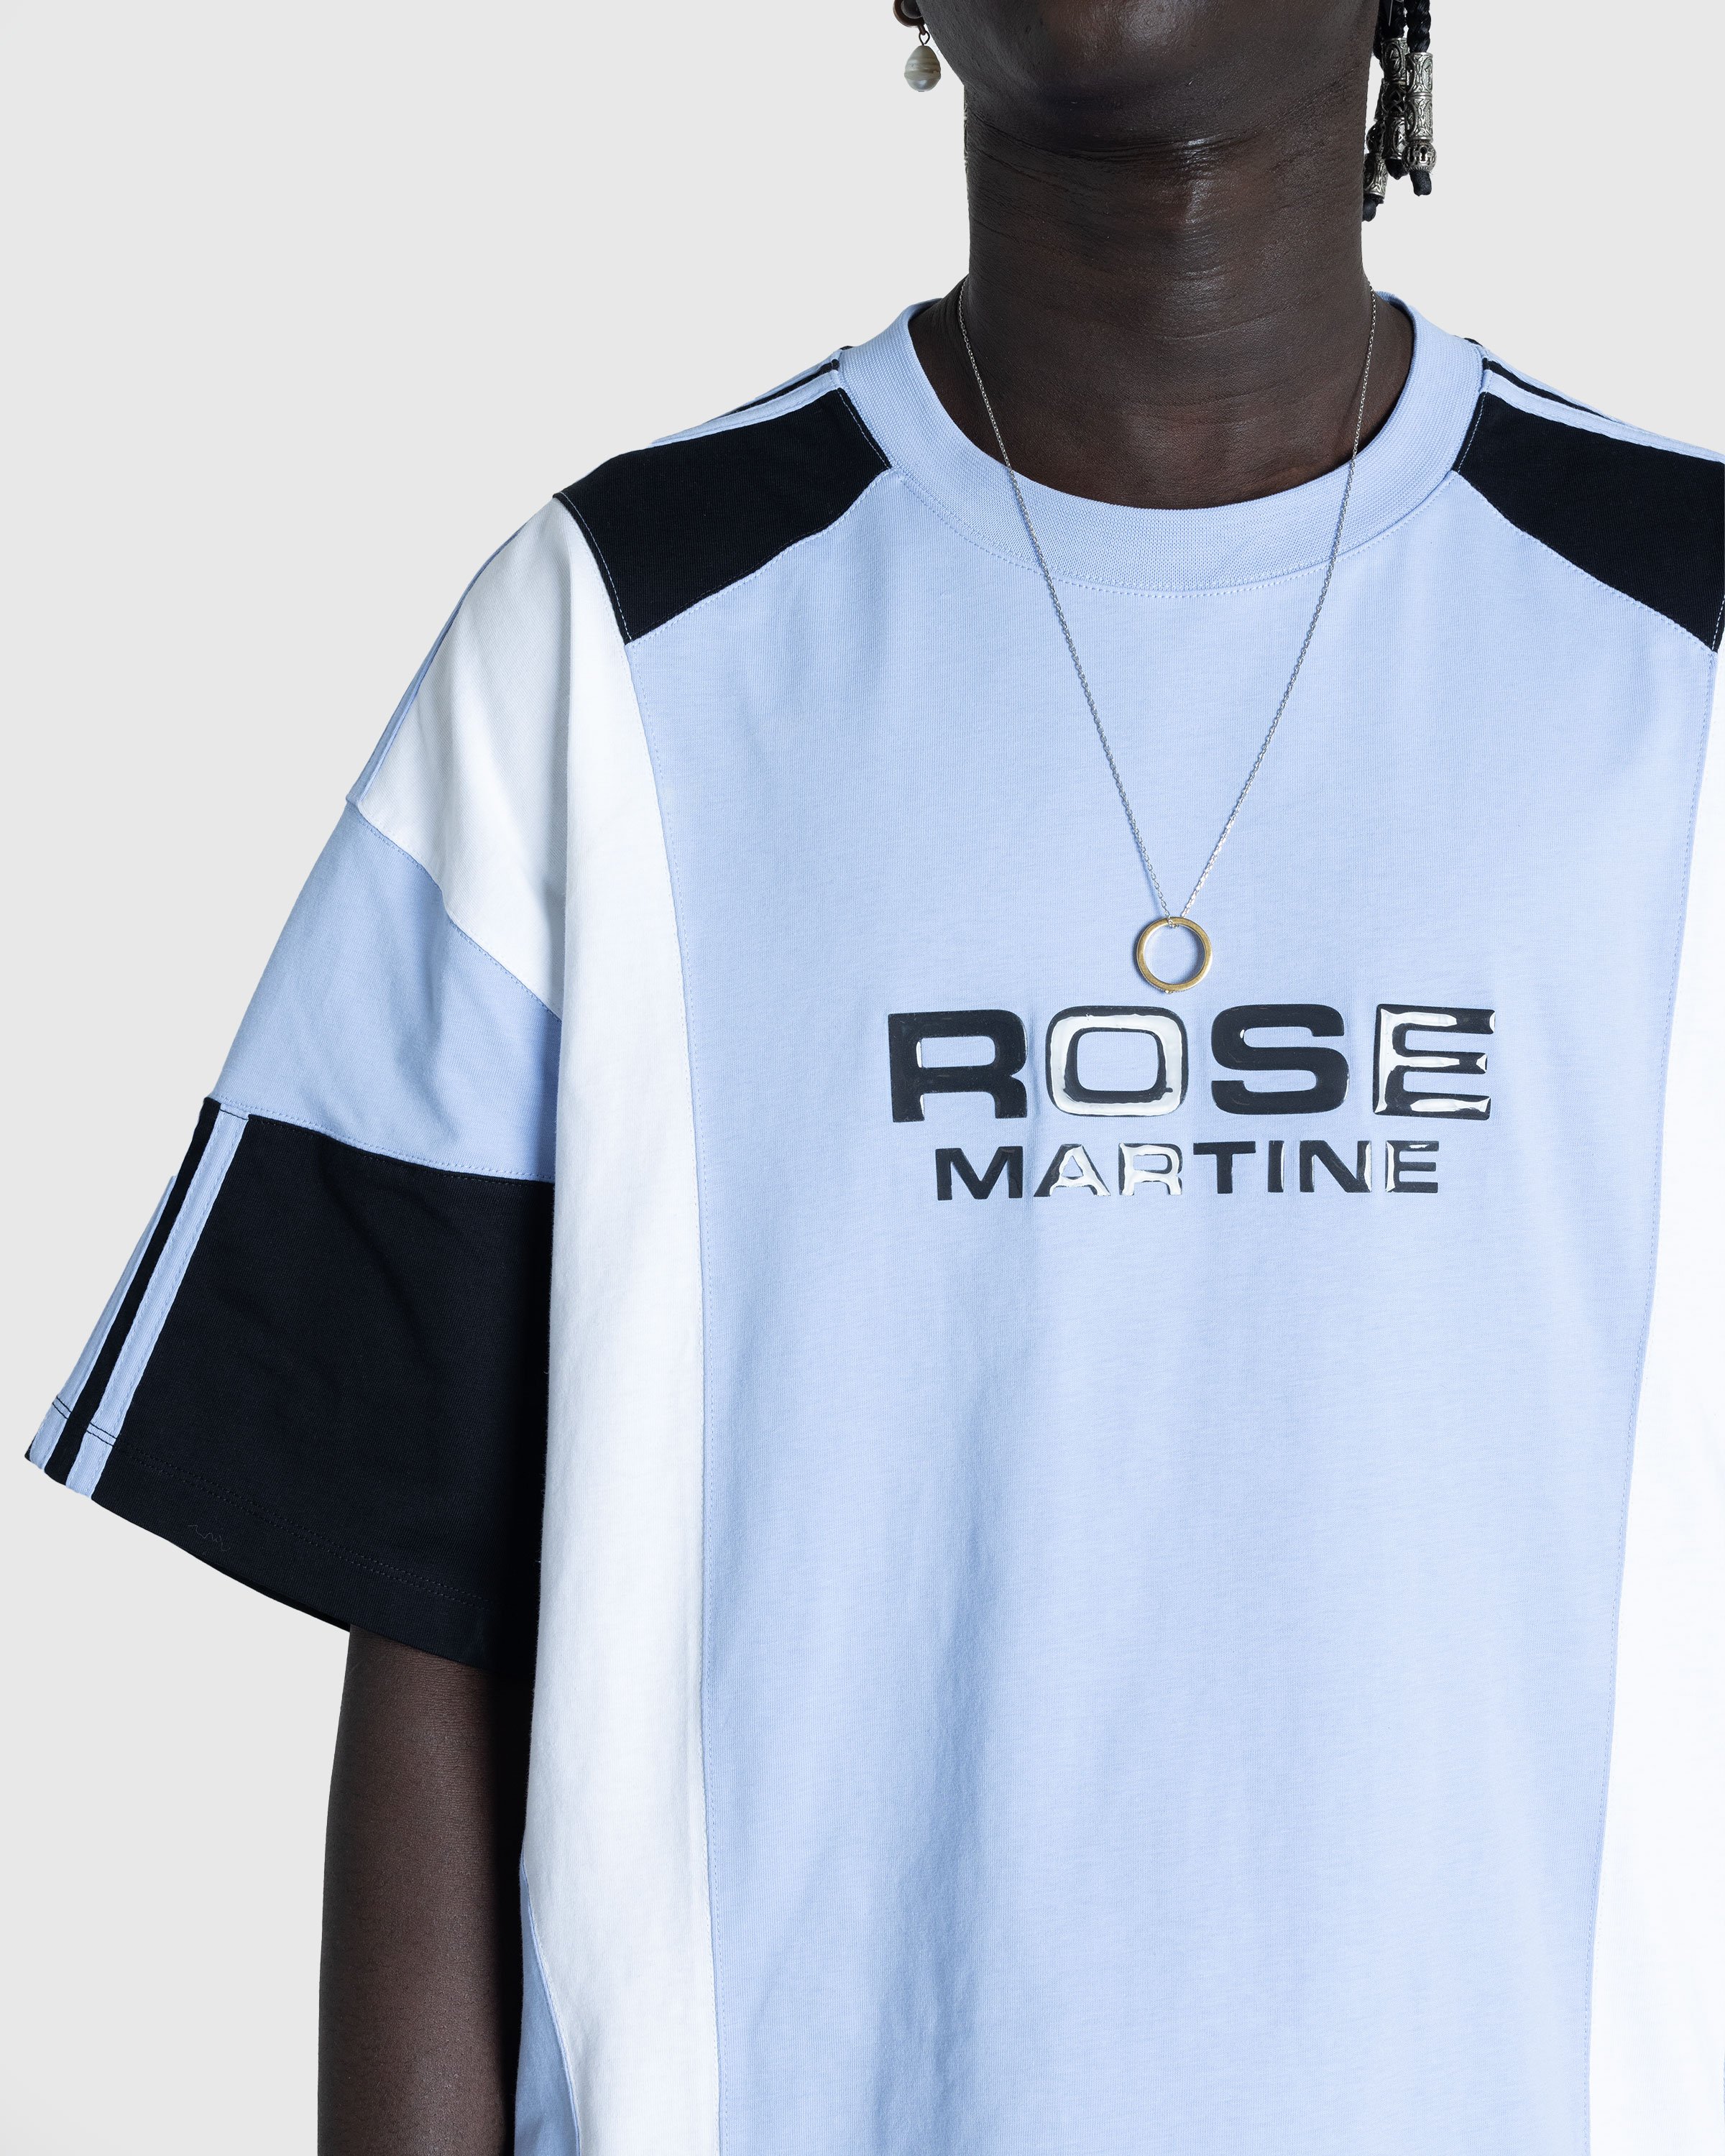 Martine Rose - Oversized Panelled T-Shirt Blue / White / Black - Clothing - Blue - Image 5